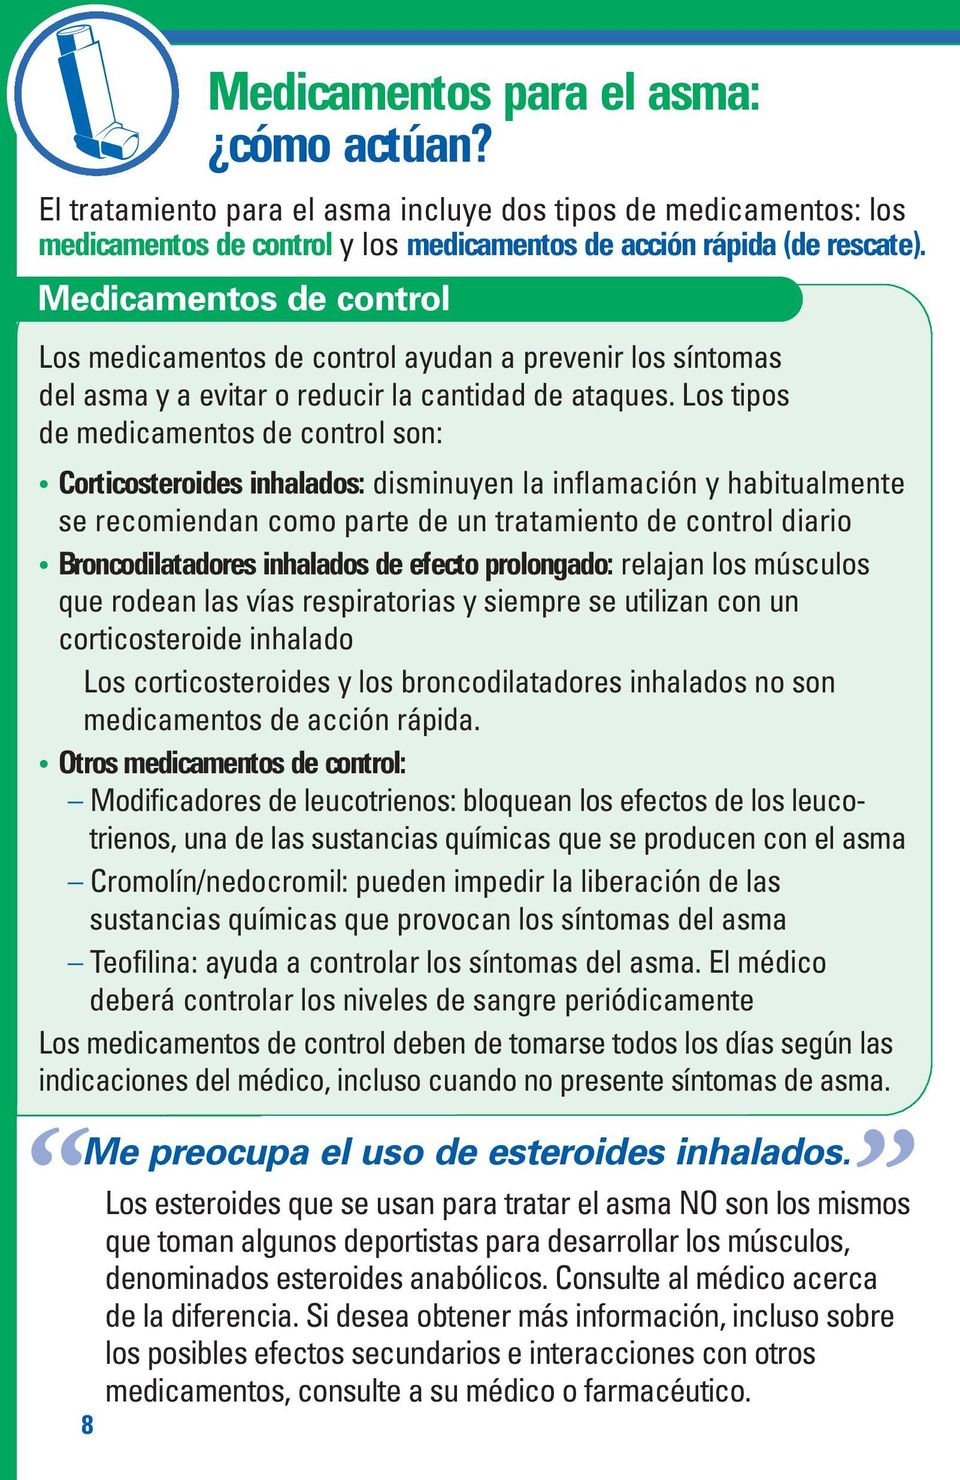 Los tipos de medicamentos de control son: Corticosteroides inhalados: disminuyen la inflamación y habitualmente se recomiendan como parte de un tratamiento de control diario Broncodilatadores